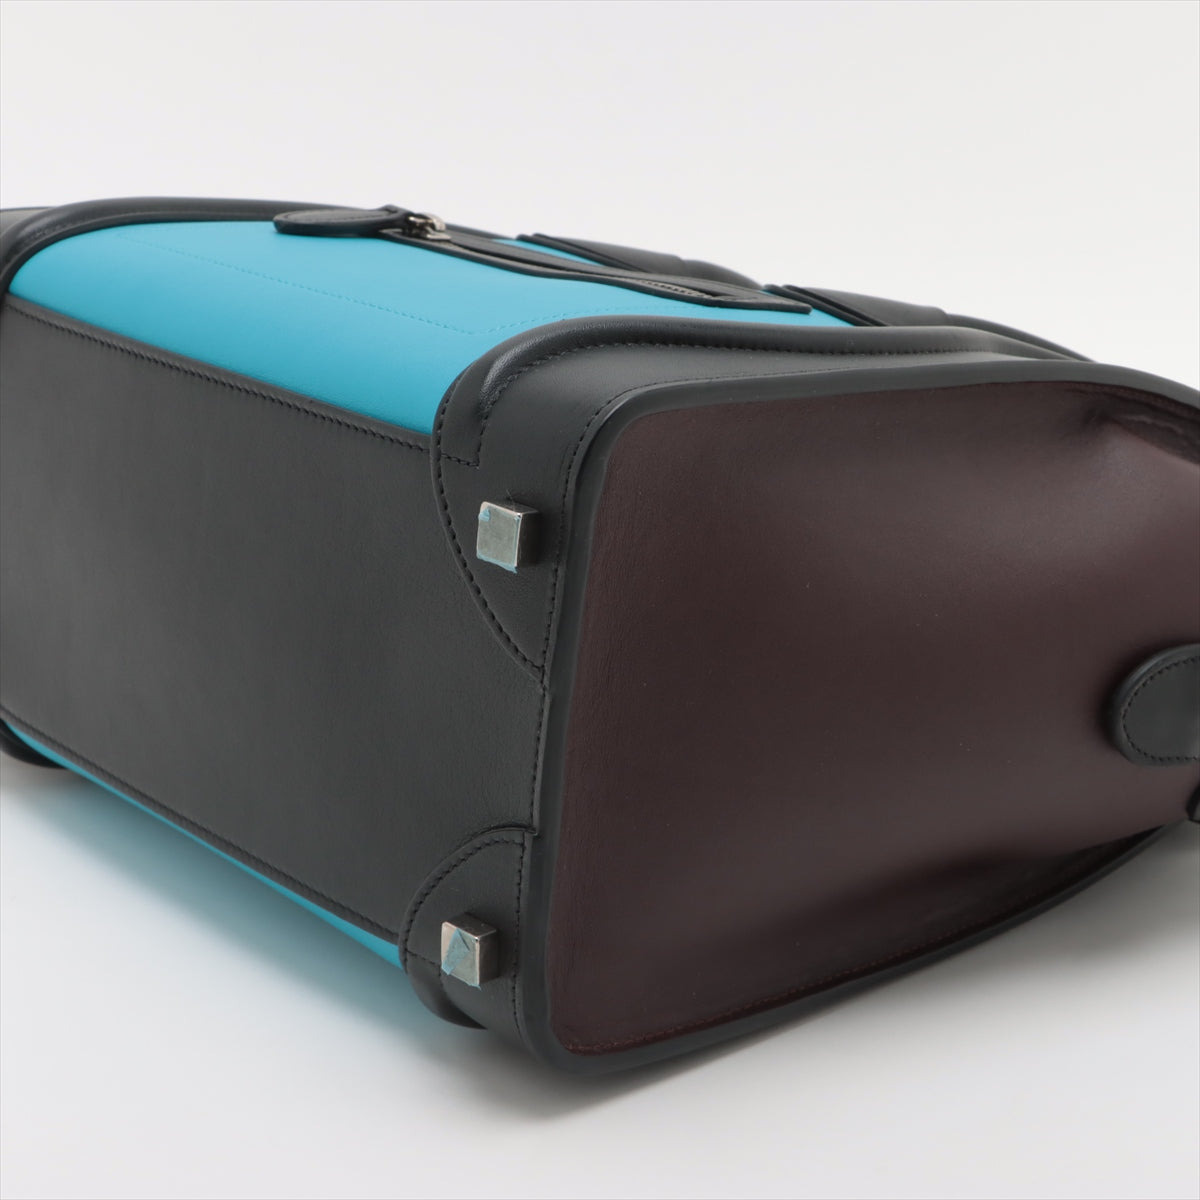 Celine Luggage Micro- 皮革手提包 多色